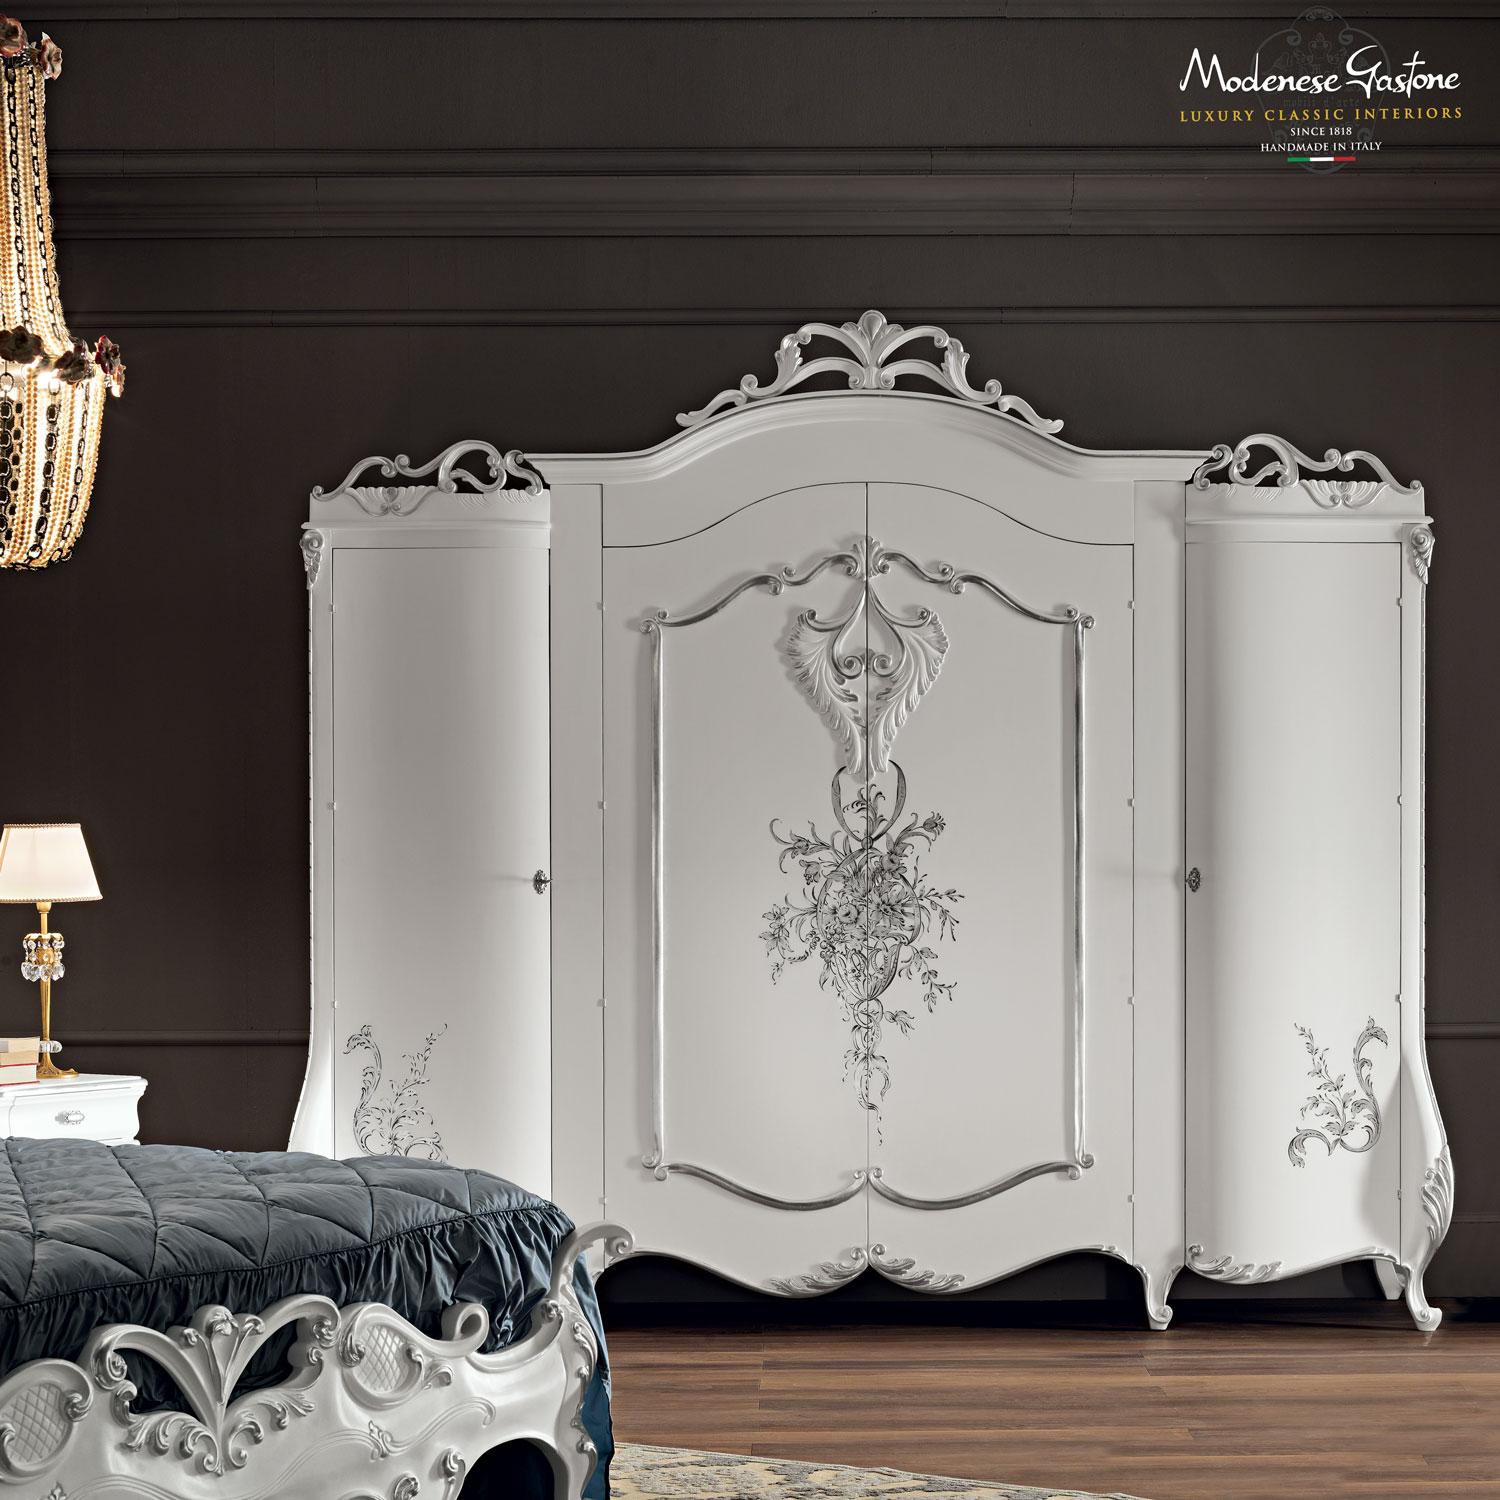 Wunderschöner, handgeschnitzter, barock inspirierter viertüriger weißer Kleiderschrank des italienischen Herstellers Modenese Luxury Interiors. Mit beeindruckenden handgemalten Blumendekorationen und Blattsilberapplikationen auf den geschnitzten